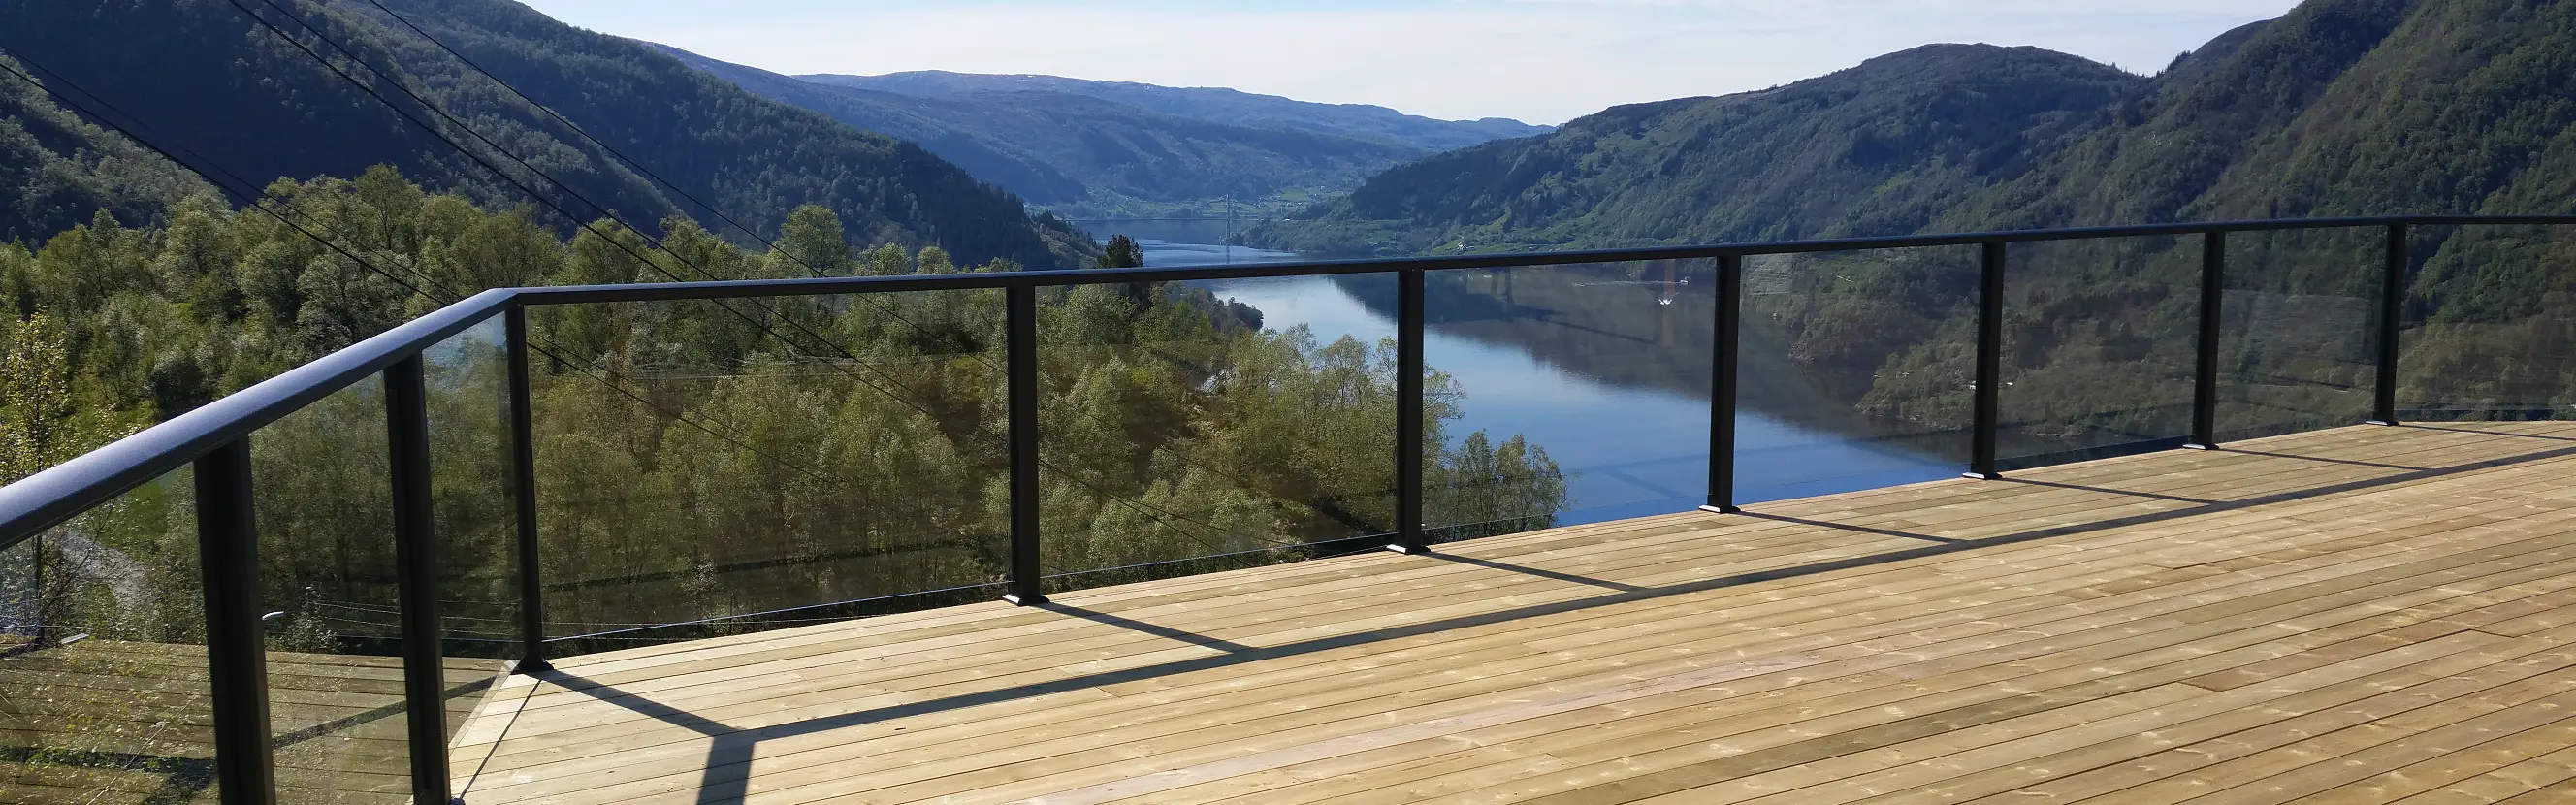 glassrekkverk på terrasse med utsikt over flott natur